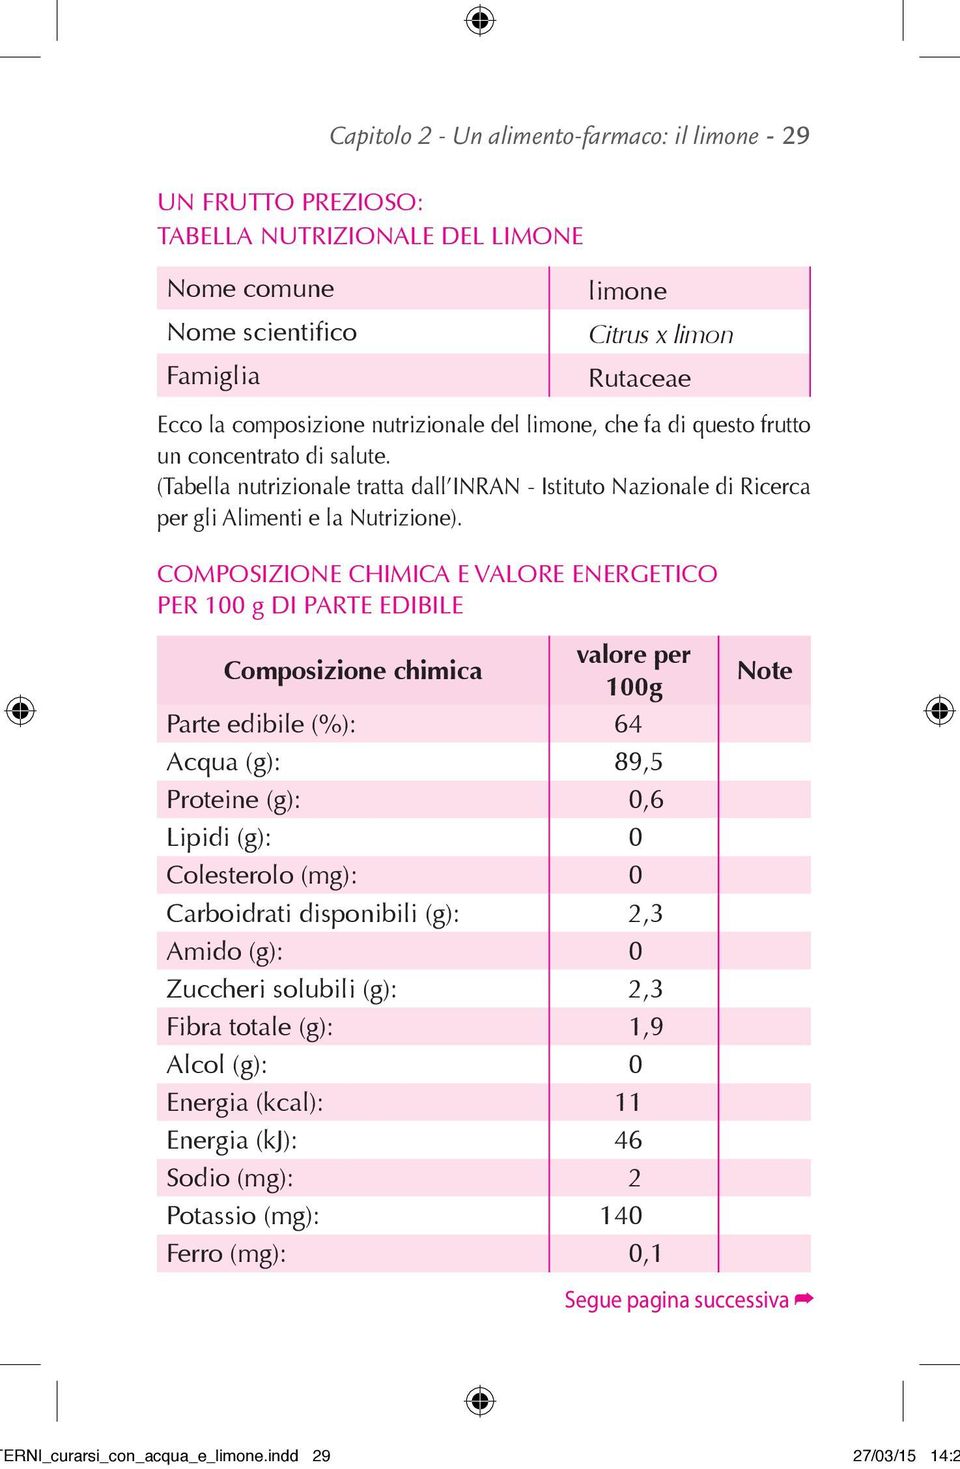 COMPOSIZIONE CHIMICA E VALORE ENERGETICO PER 100 g DI PARTE EDIBILE Composizione chimica valore per 100g Parte edibile (%): 64,0 Acqua (g): 89,5 Proteine (g): 0,6 Lipidi (g): 0,0 Colesterolo (mg):